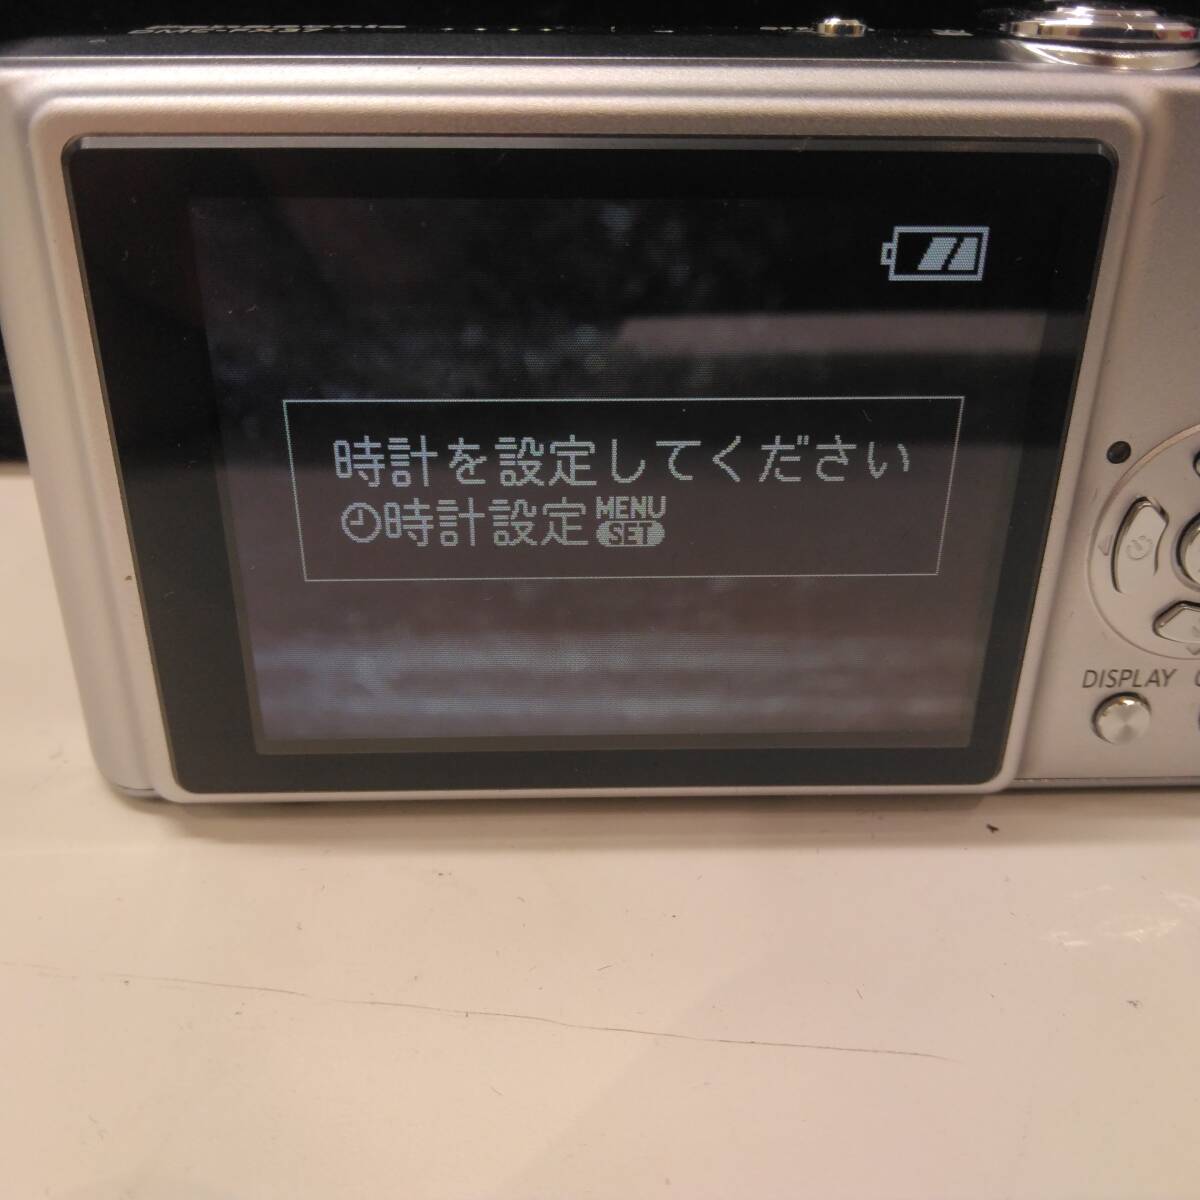 #16760 цифровая камера Panasonic Panasonic LUMIX Lumix DMC-FX37 серебряный электризация проверка settled фотосъемка не проверка вскрыть settled фотобумага. дополнение б/у товар 